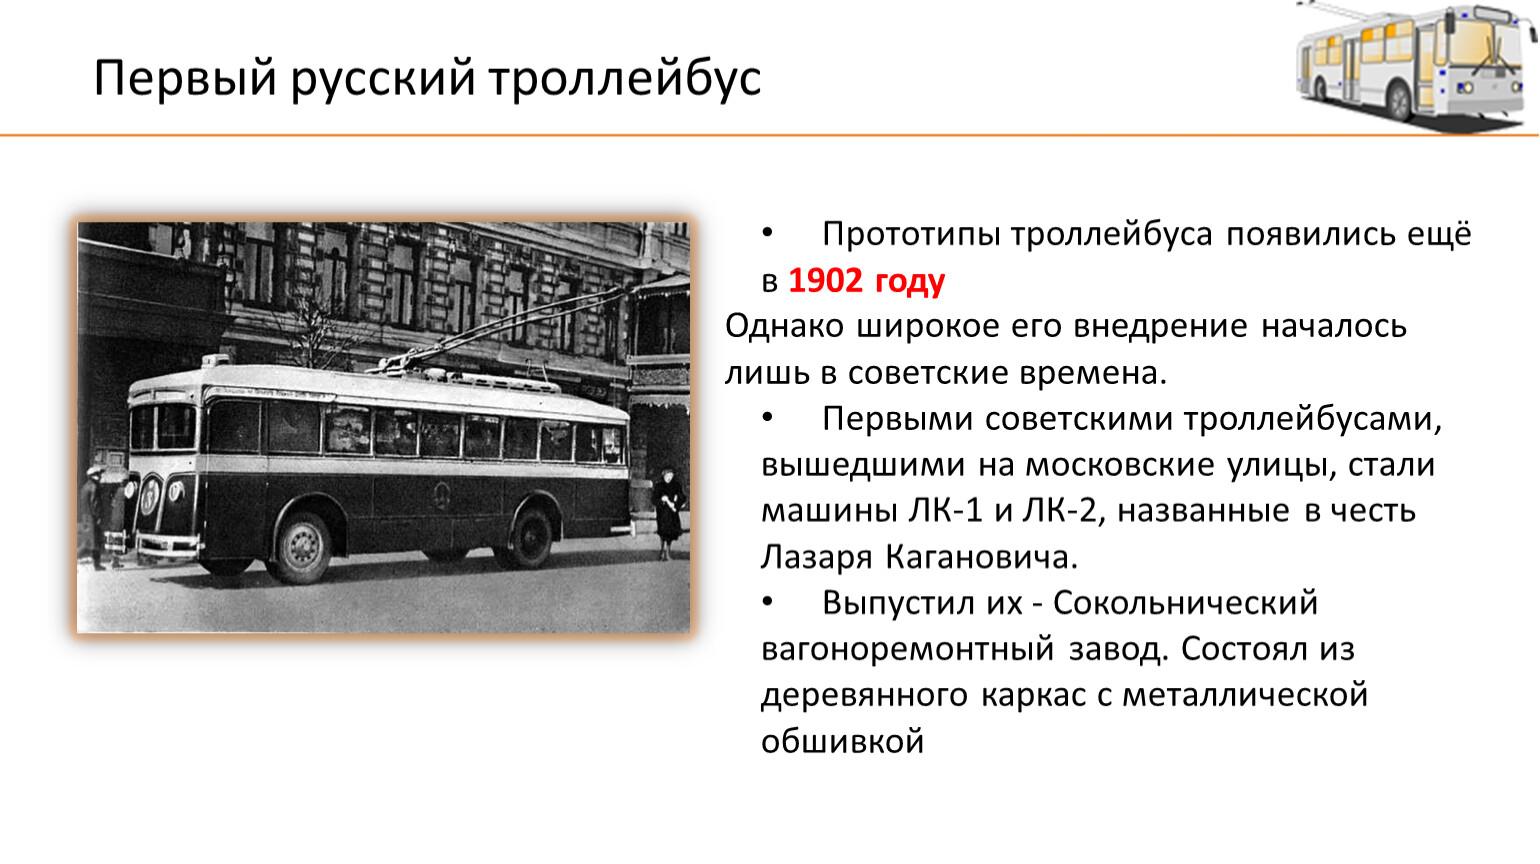 Расписание 61 троллейбуса минск. Загадка про троллейбус. Загадка про троллейбус для детей. История российских троллейбусов. Ребус троллейбус.